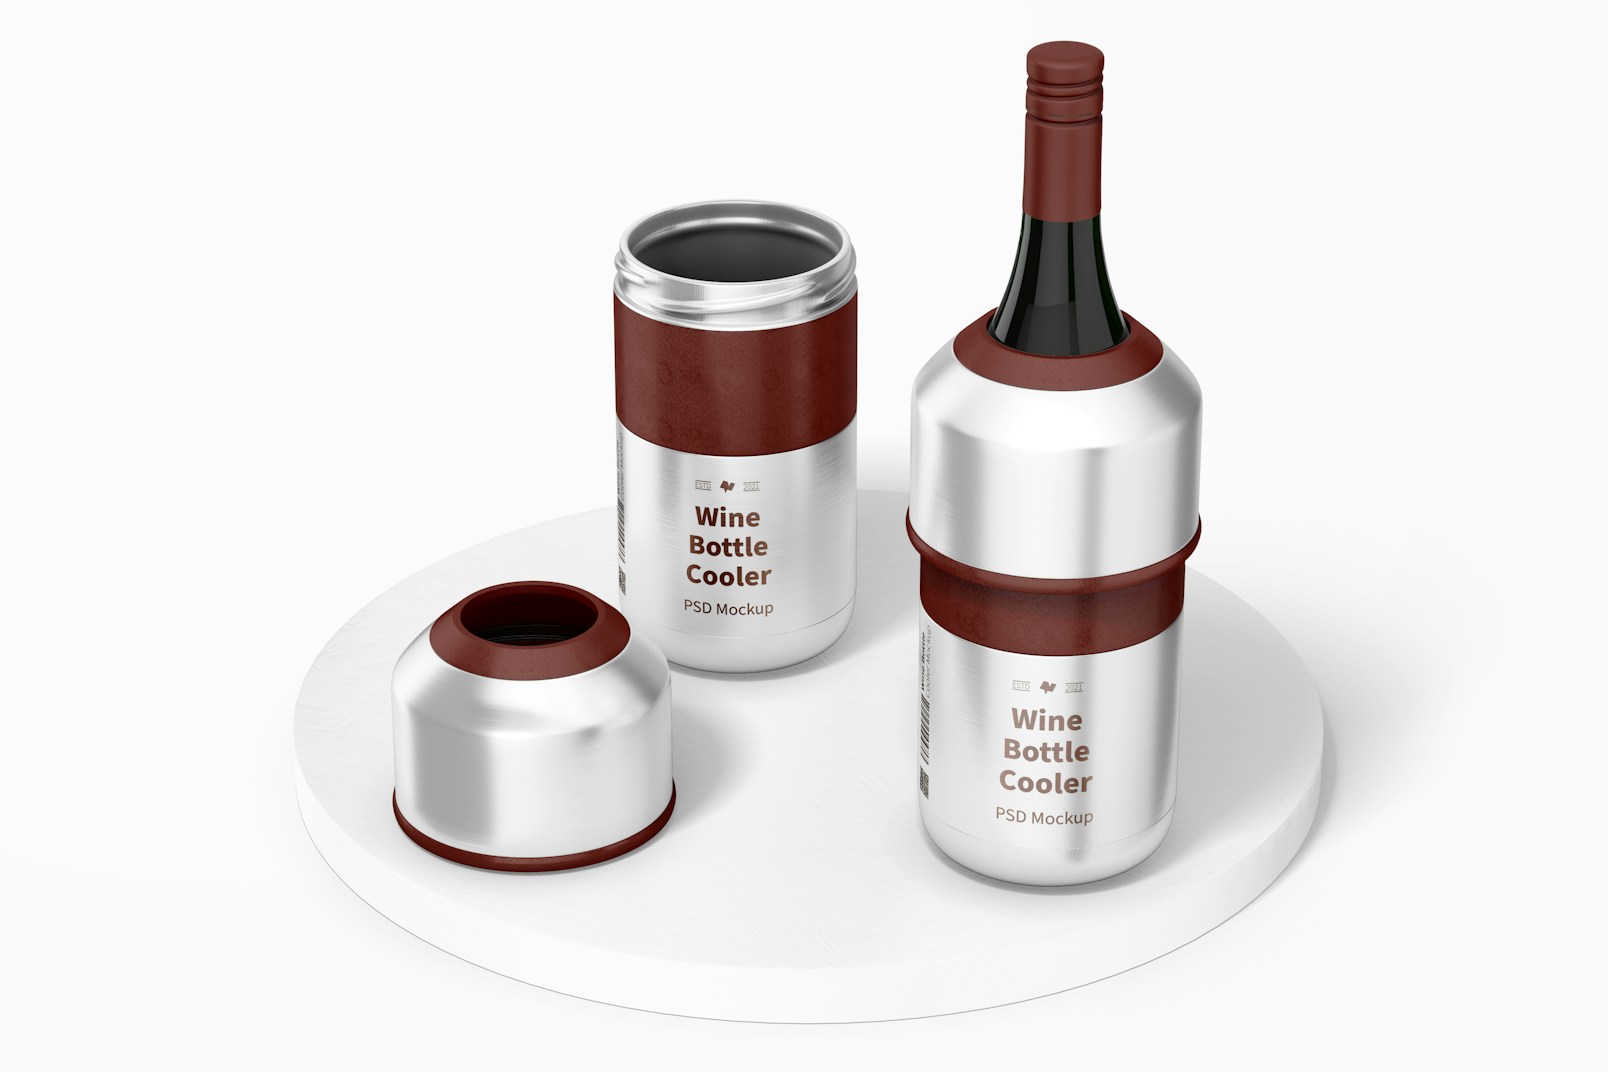 Maqueta de Enfriadores de Botella de Vino